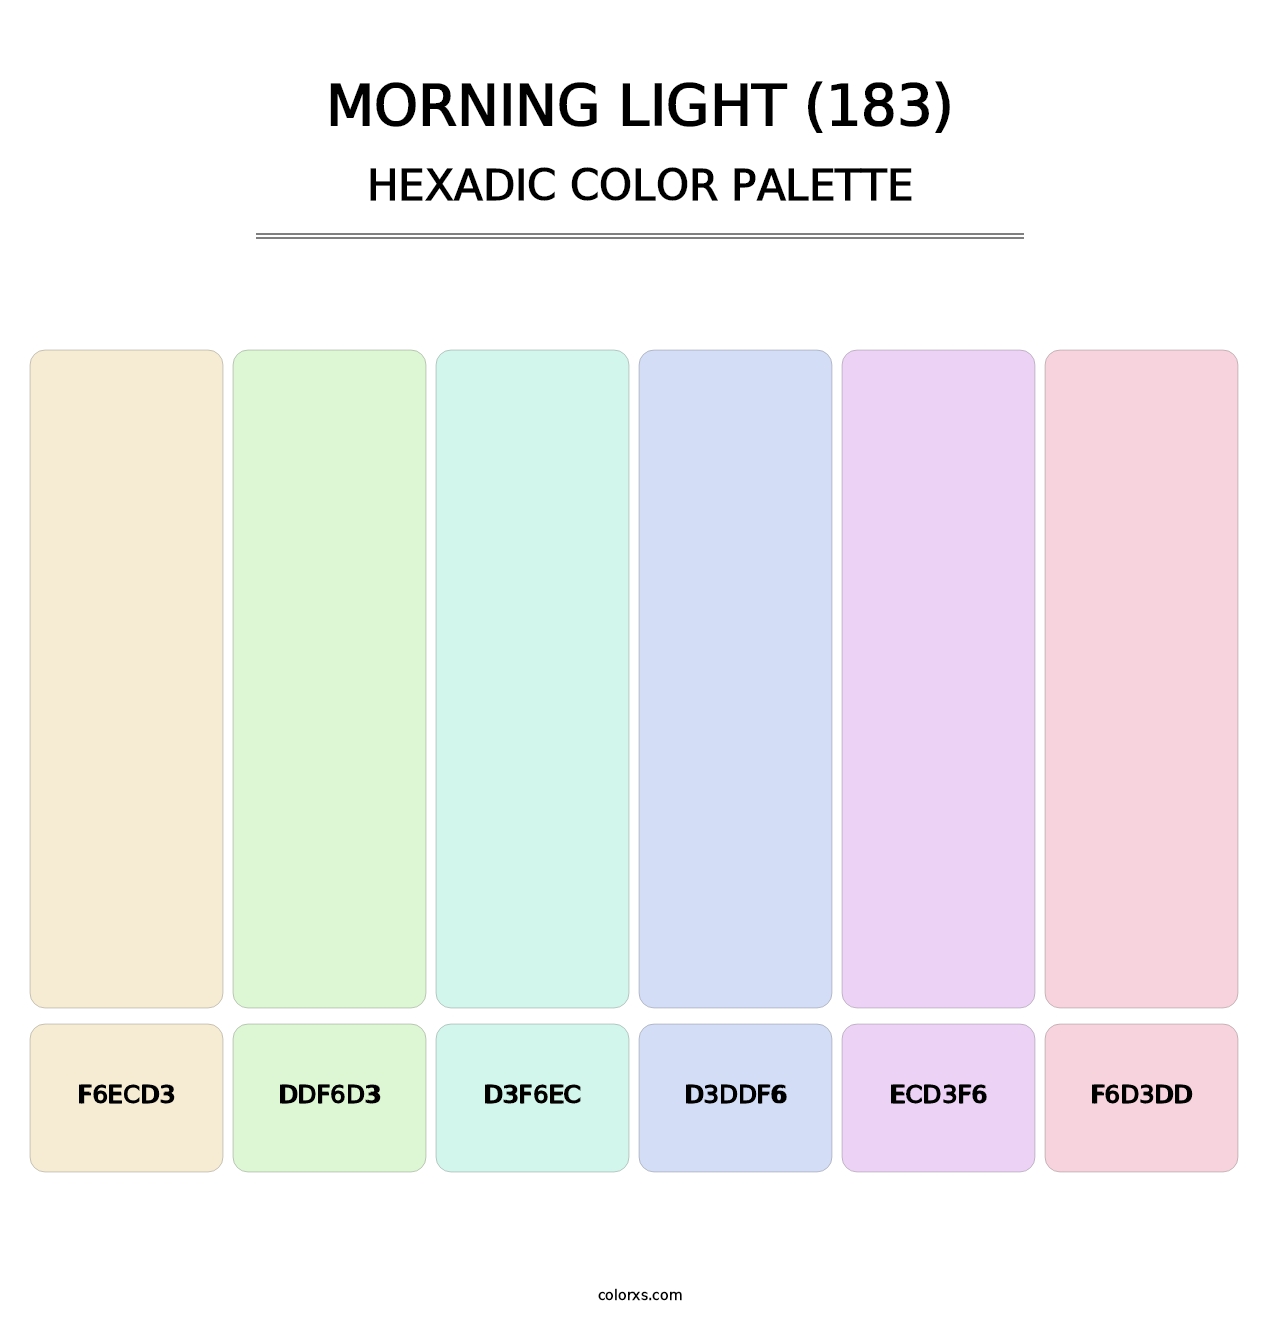 Morning Light (183) - Hexadic Color Palette